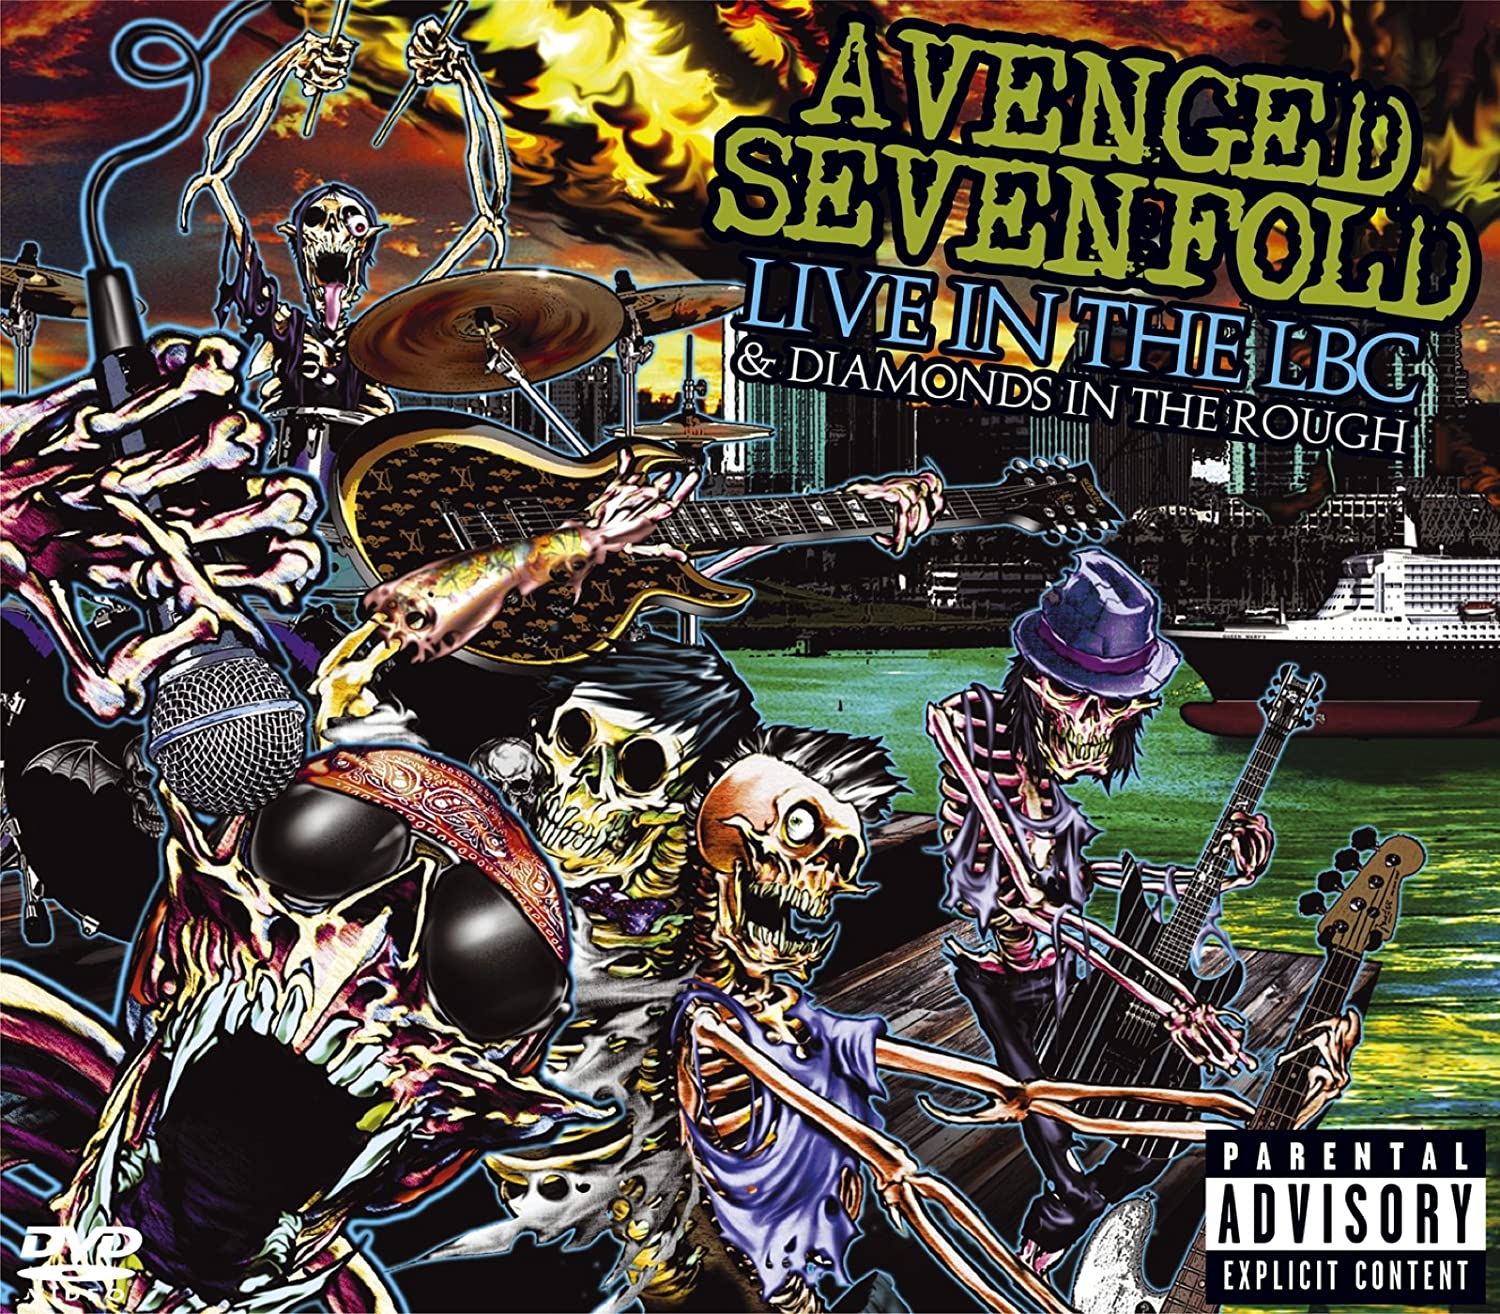 Avenged Sevenfold Legendado (@A7xLegendado) / X